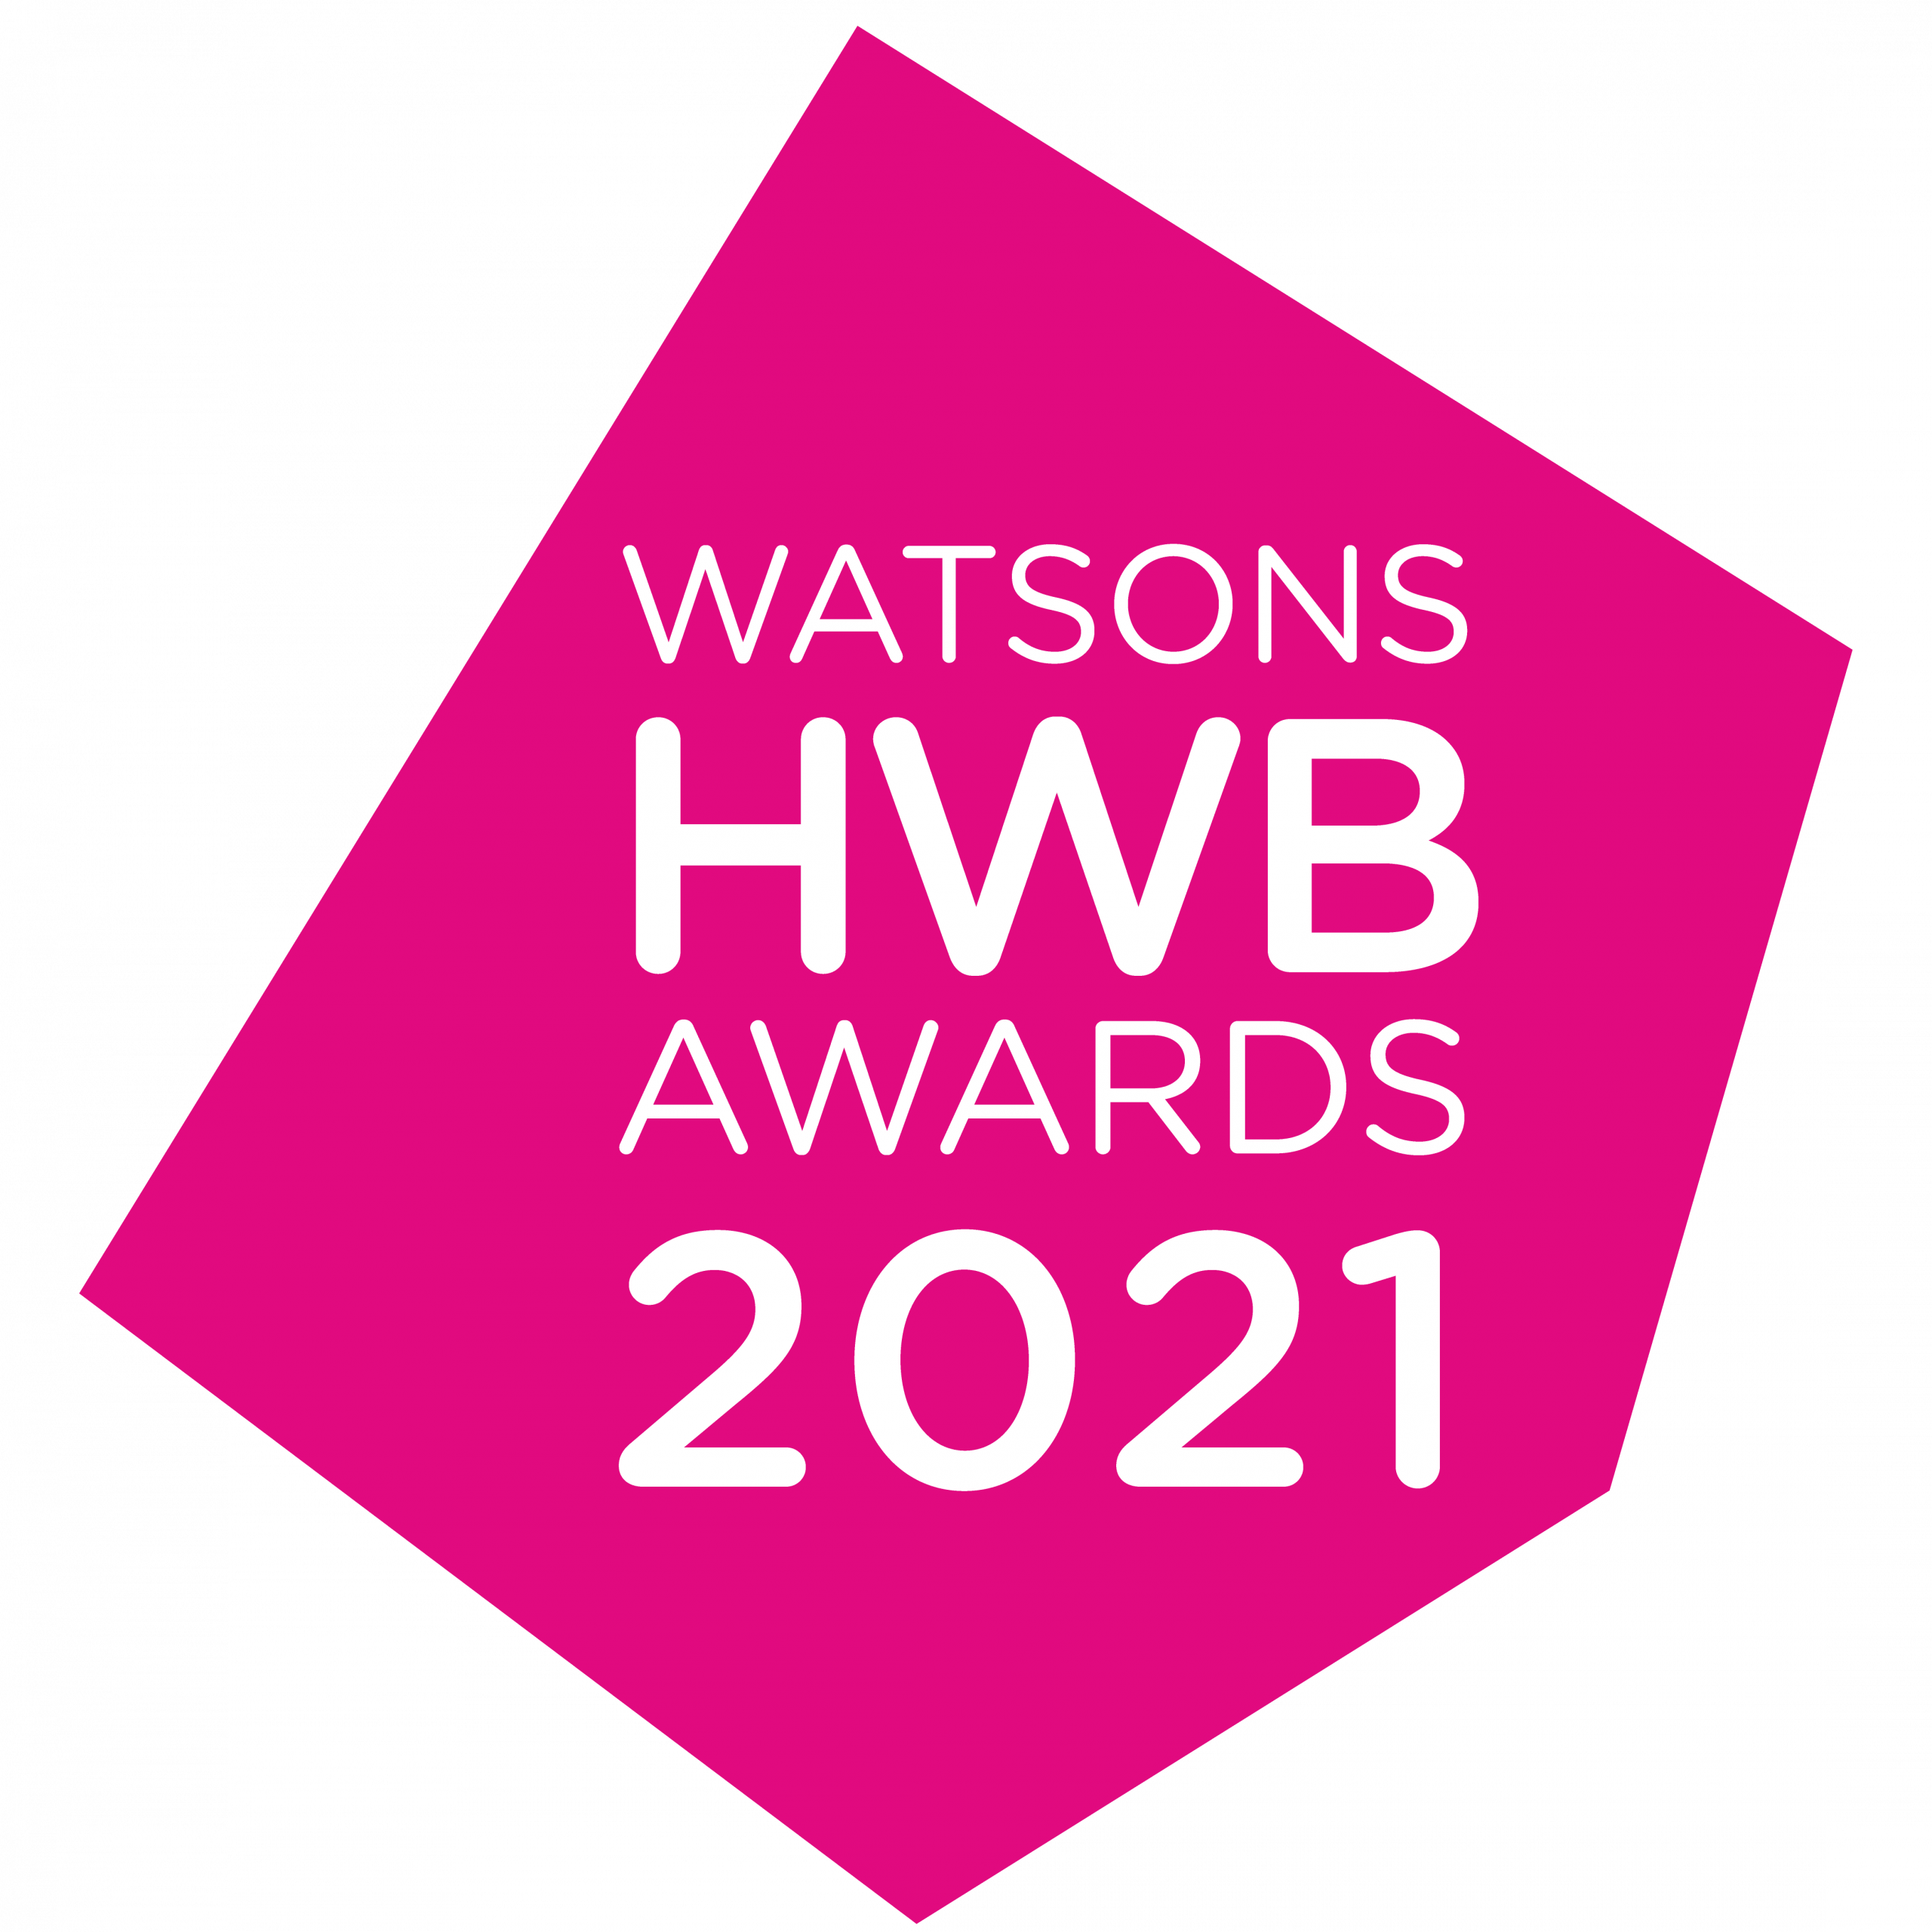 HWB Awards 2021